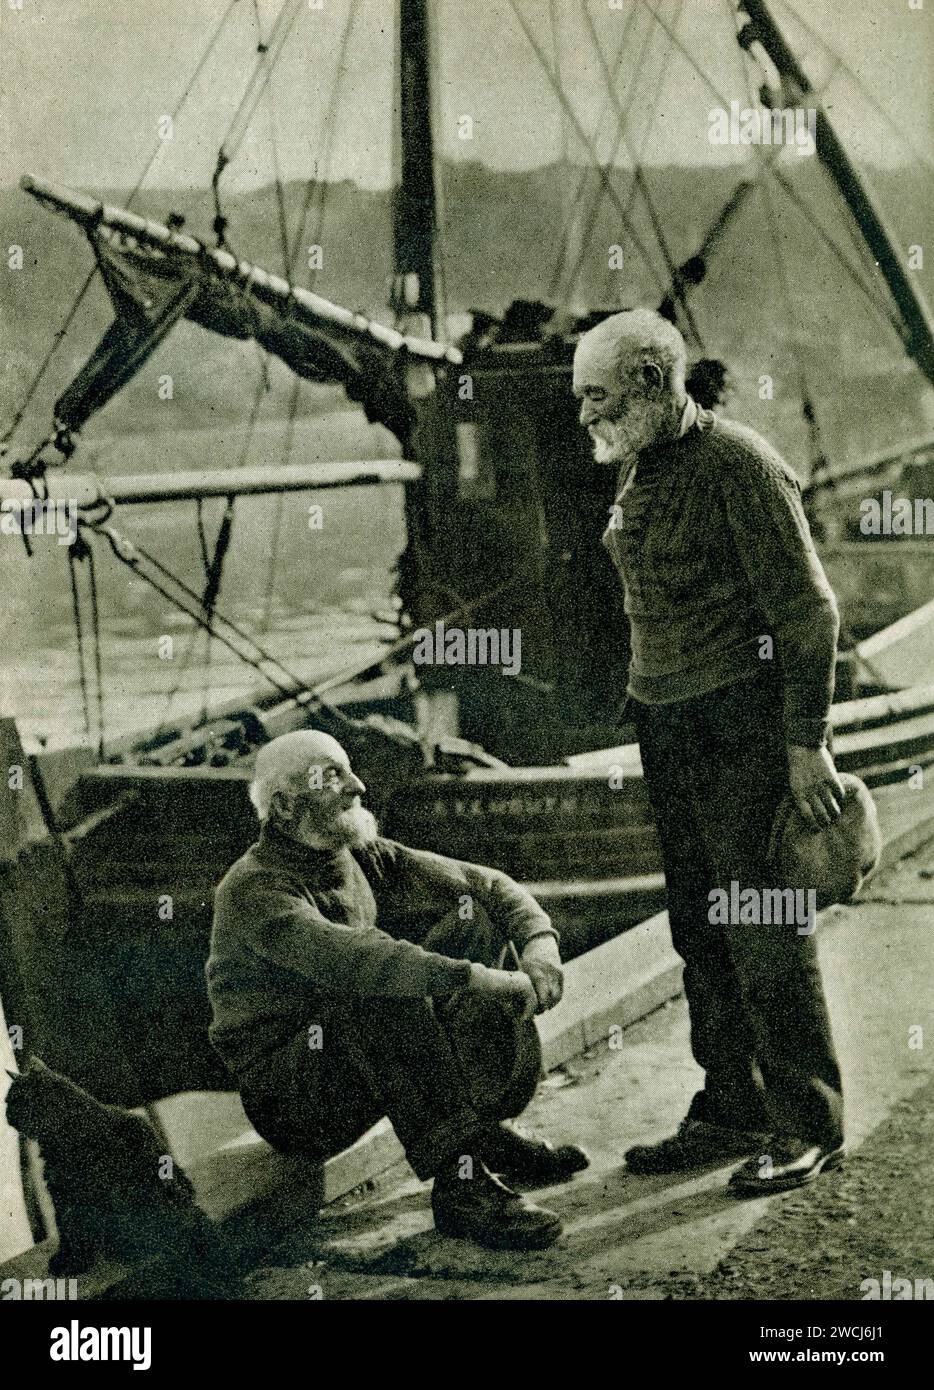 All'inizio 1900 degli anni '1930 fotografia di due pescatori di Eyemouth, che chiacchieravano sul molo, dal libro 'in Scotland Again' di H. V. Morton. (Primo pub 26 ottobre 1933) Eyemouth, Berwickshire, Scozia, Regno Unito Foto Stock